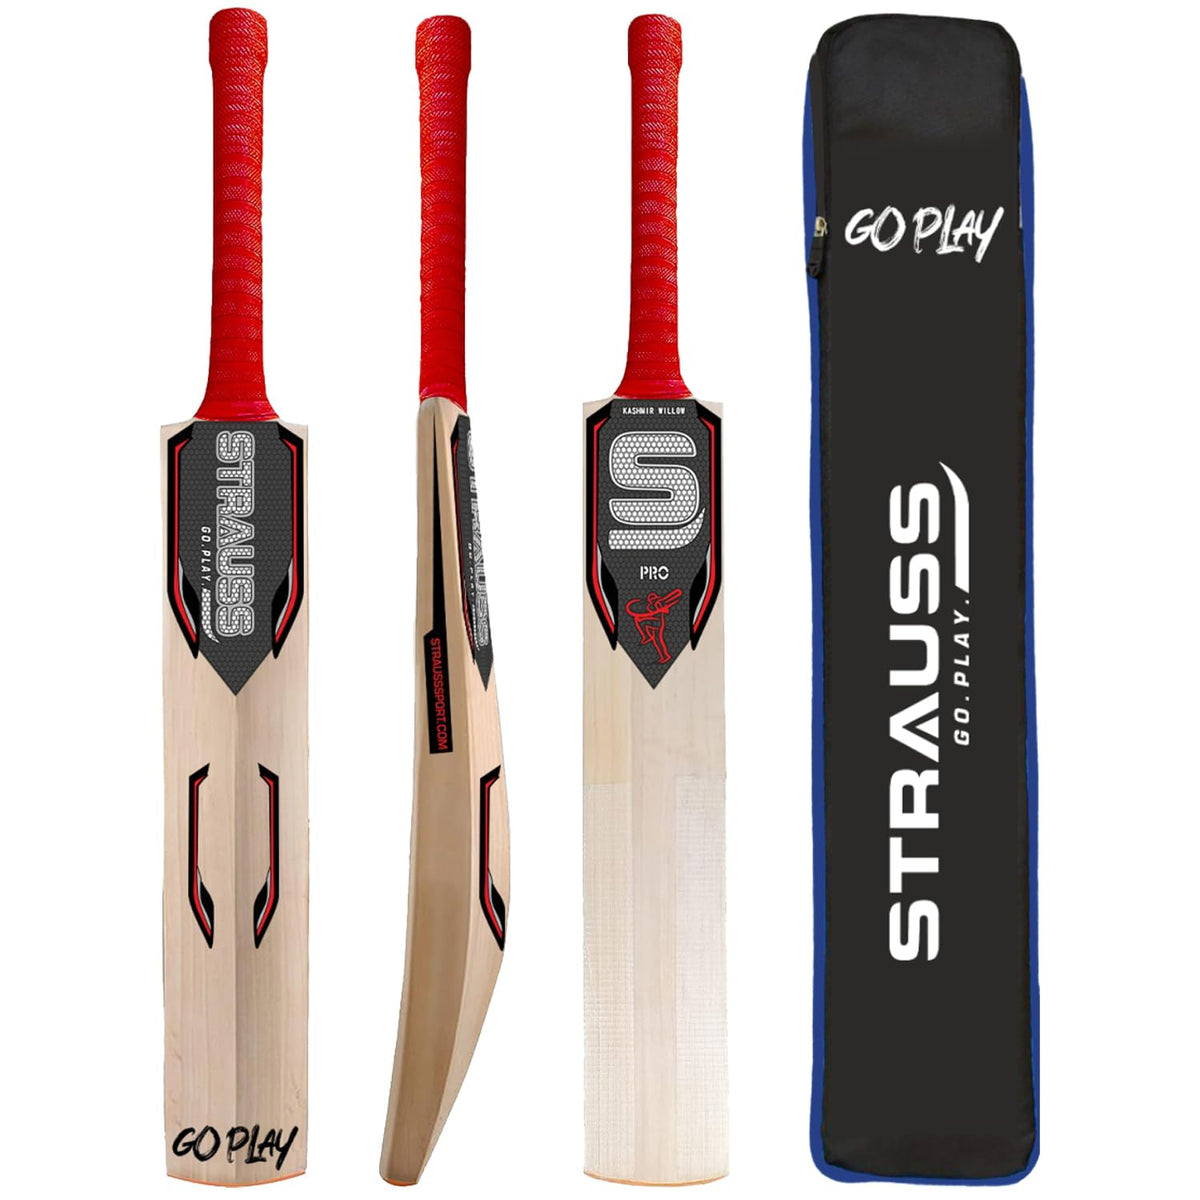 Strauss Pro Cricket Bat | Kashmir Willow Tournament Match Bat with Grip | Standard Leather Ball Bat for Cricket Junior Cricket Bat for Training and Matches | Size 5 (800-900g)